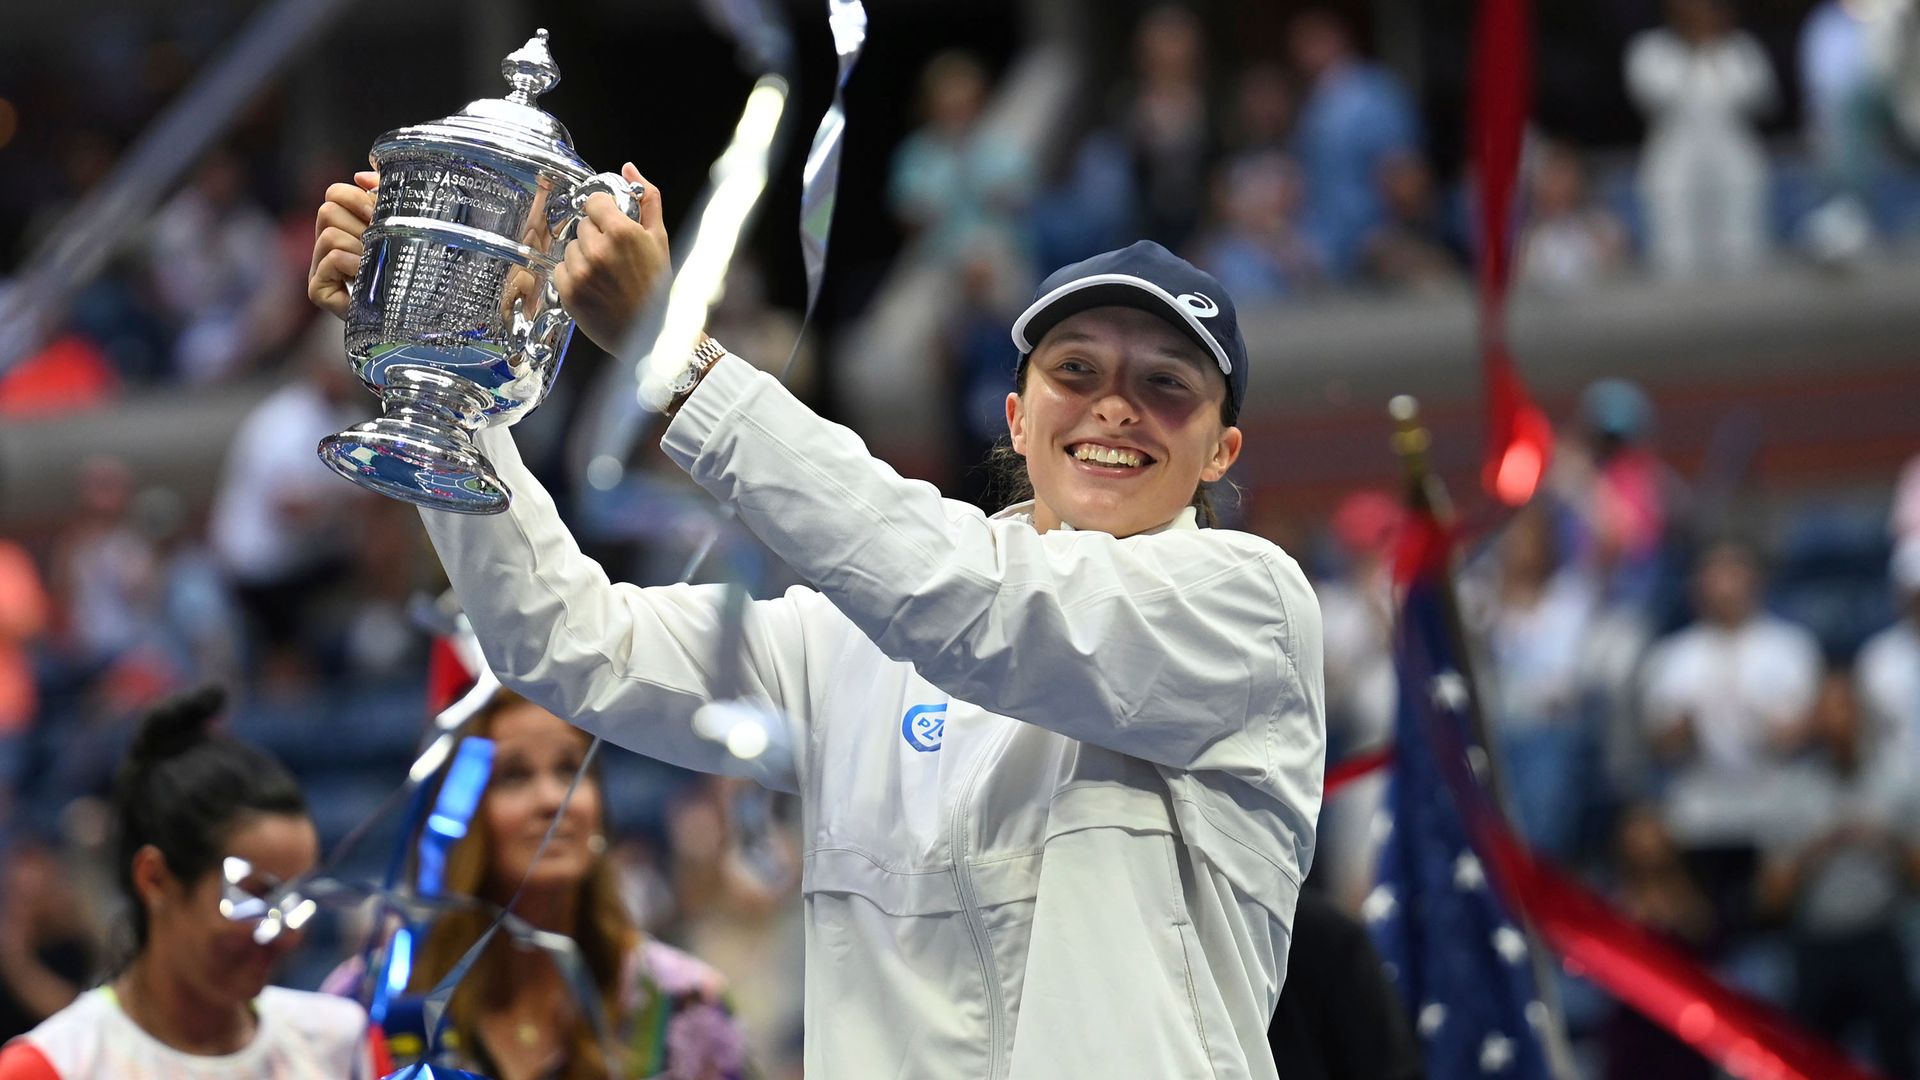 Swiatek win the US Open | Women's final highlights